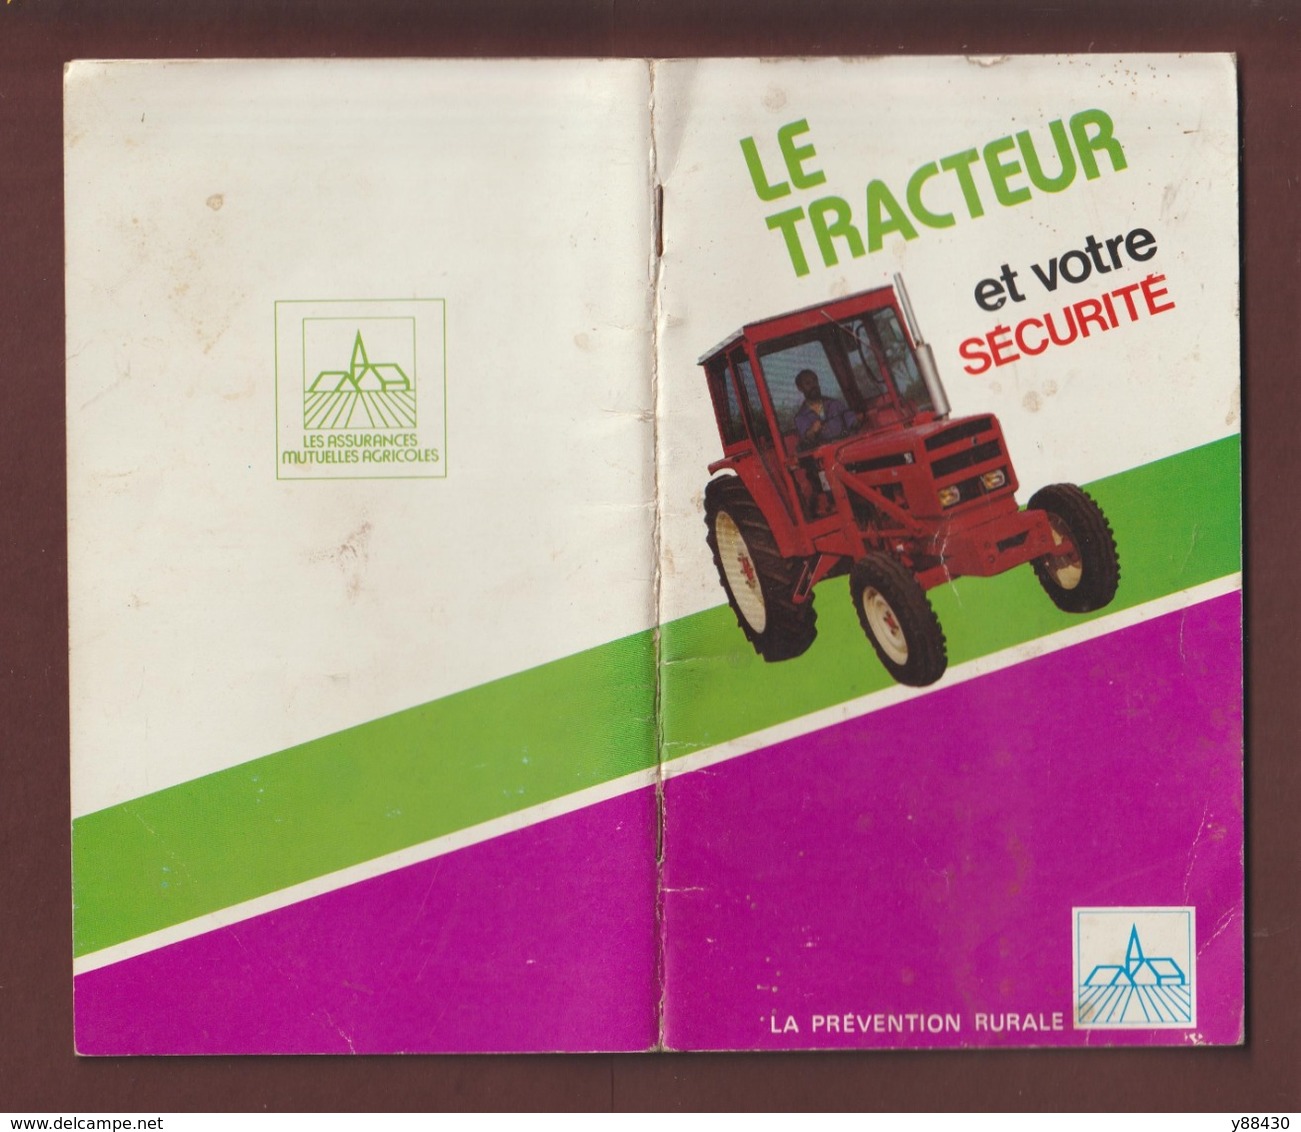 LE TRACTEUR ET VOTRE SECURITE - Livret de 1977 édité par LA PREVENTION RURALE - 50 pages - 22 photos